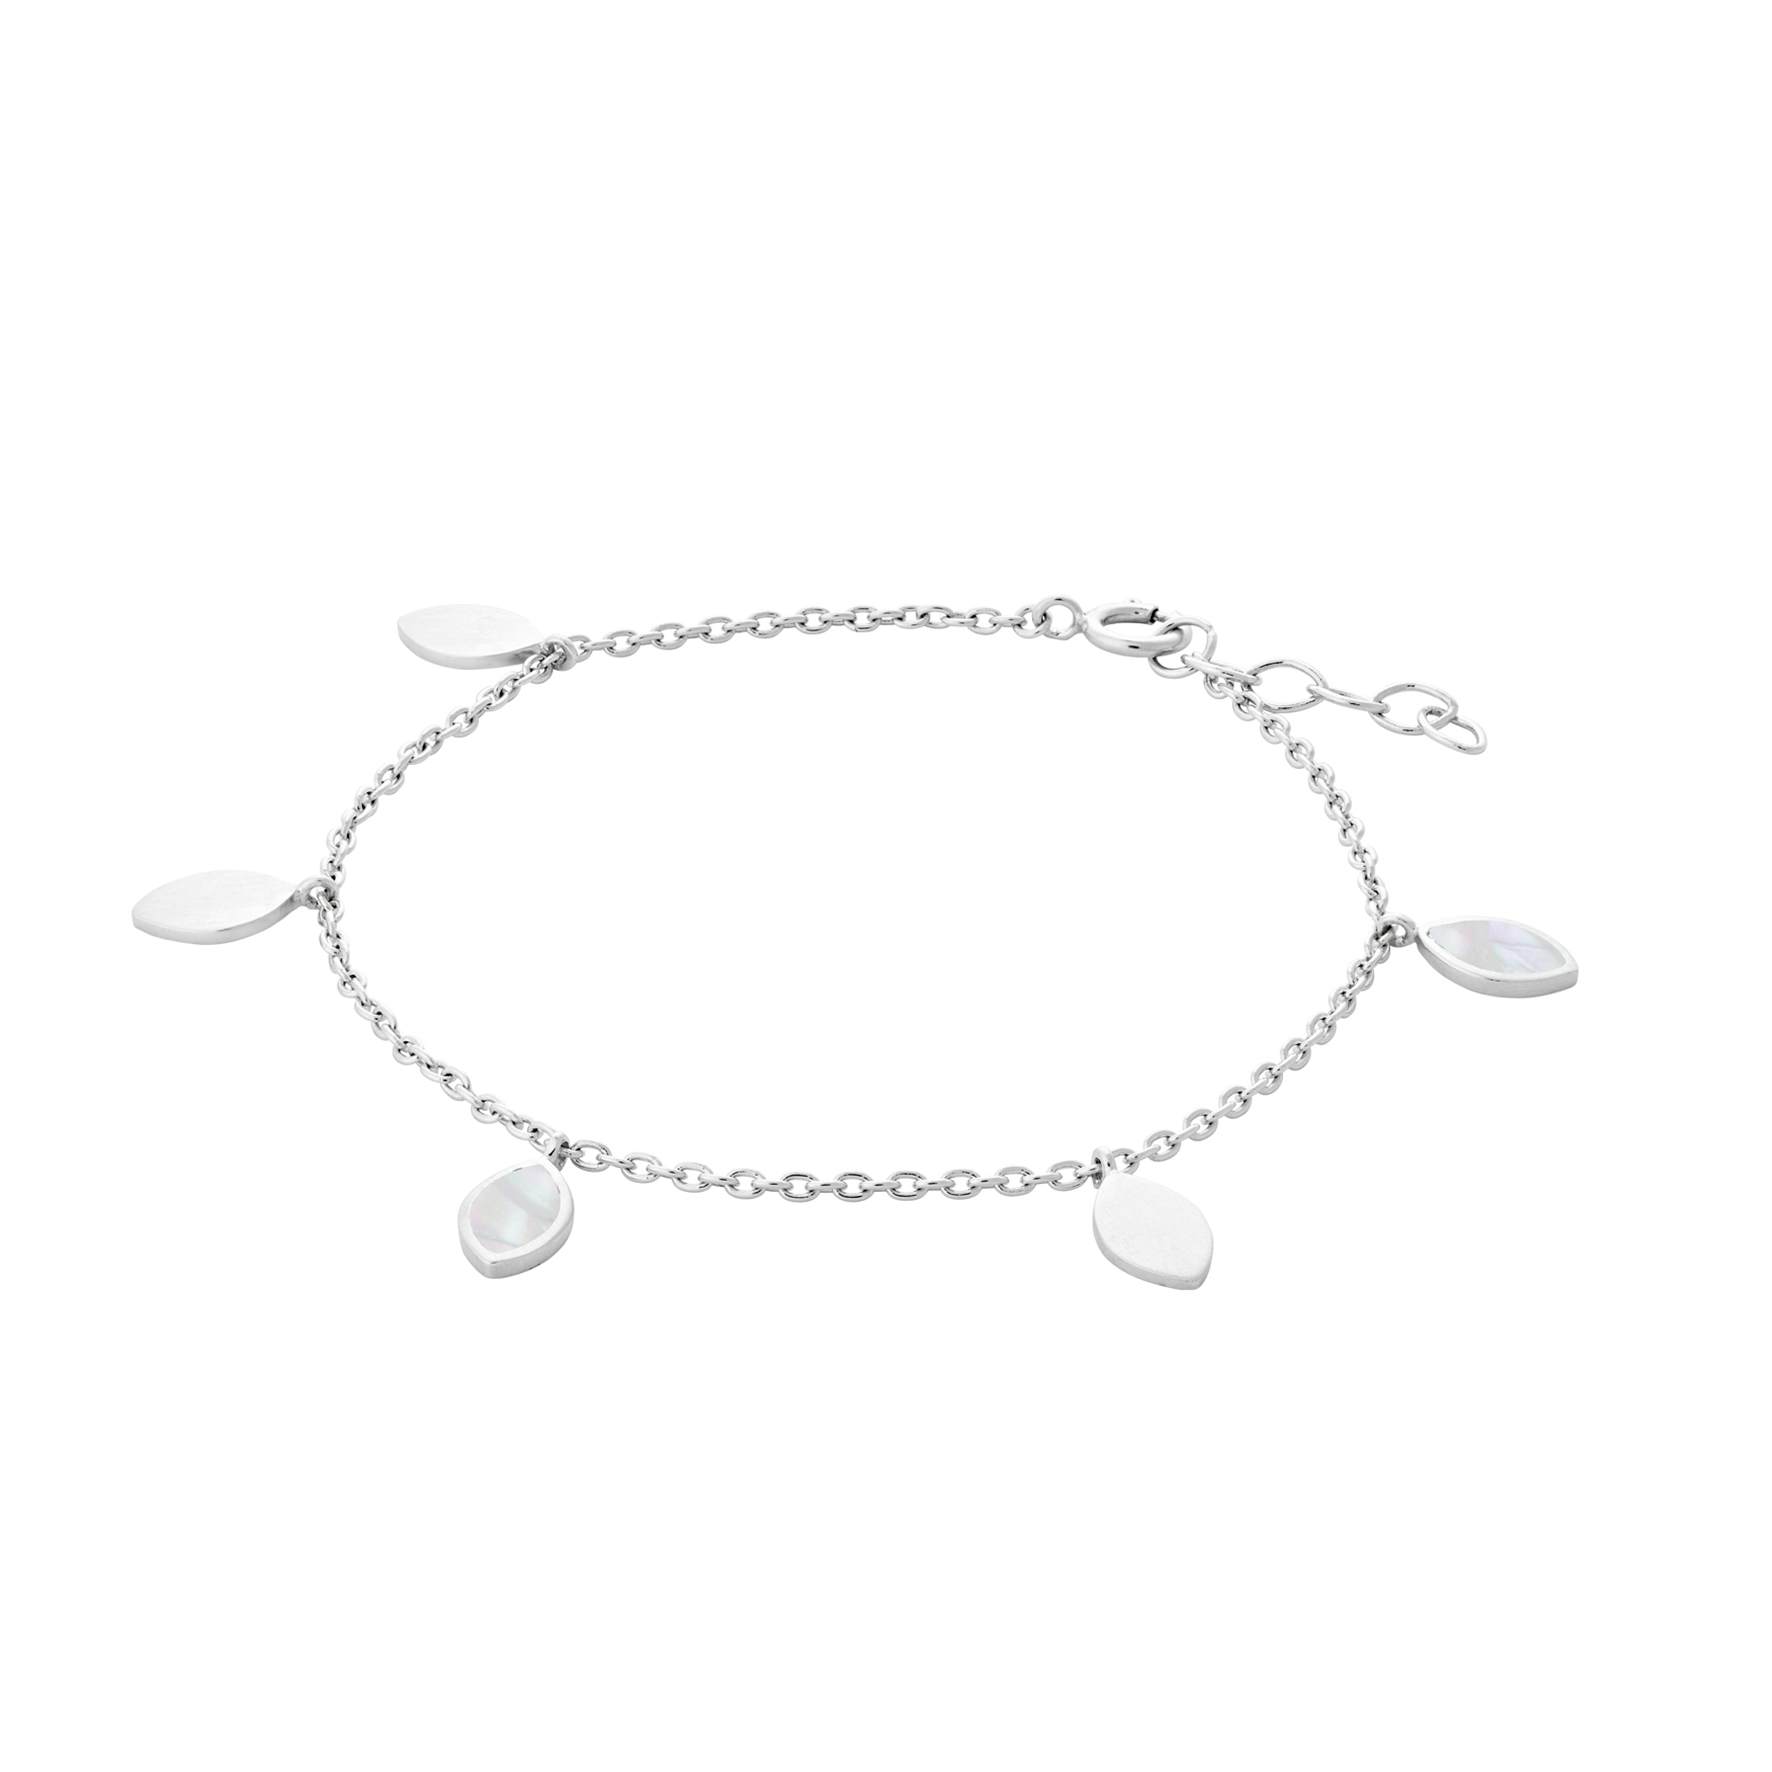 Flake Bracelet from Pernille Corydon in Silver Sterling 925